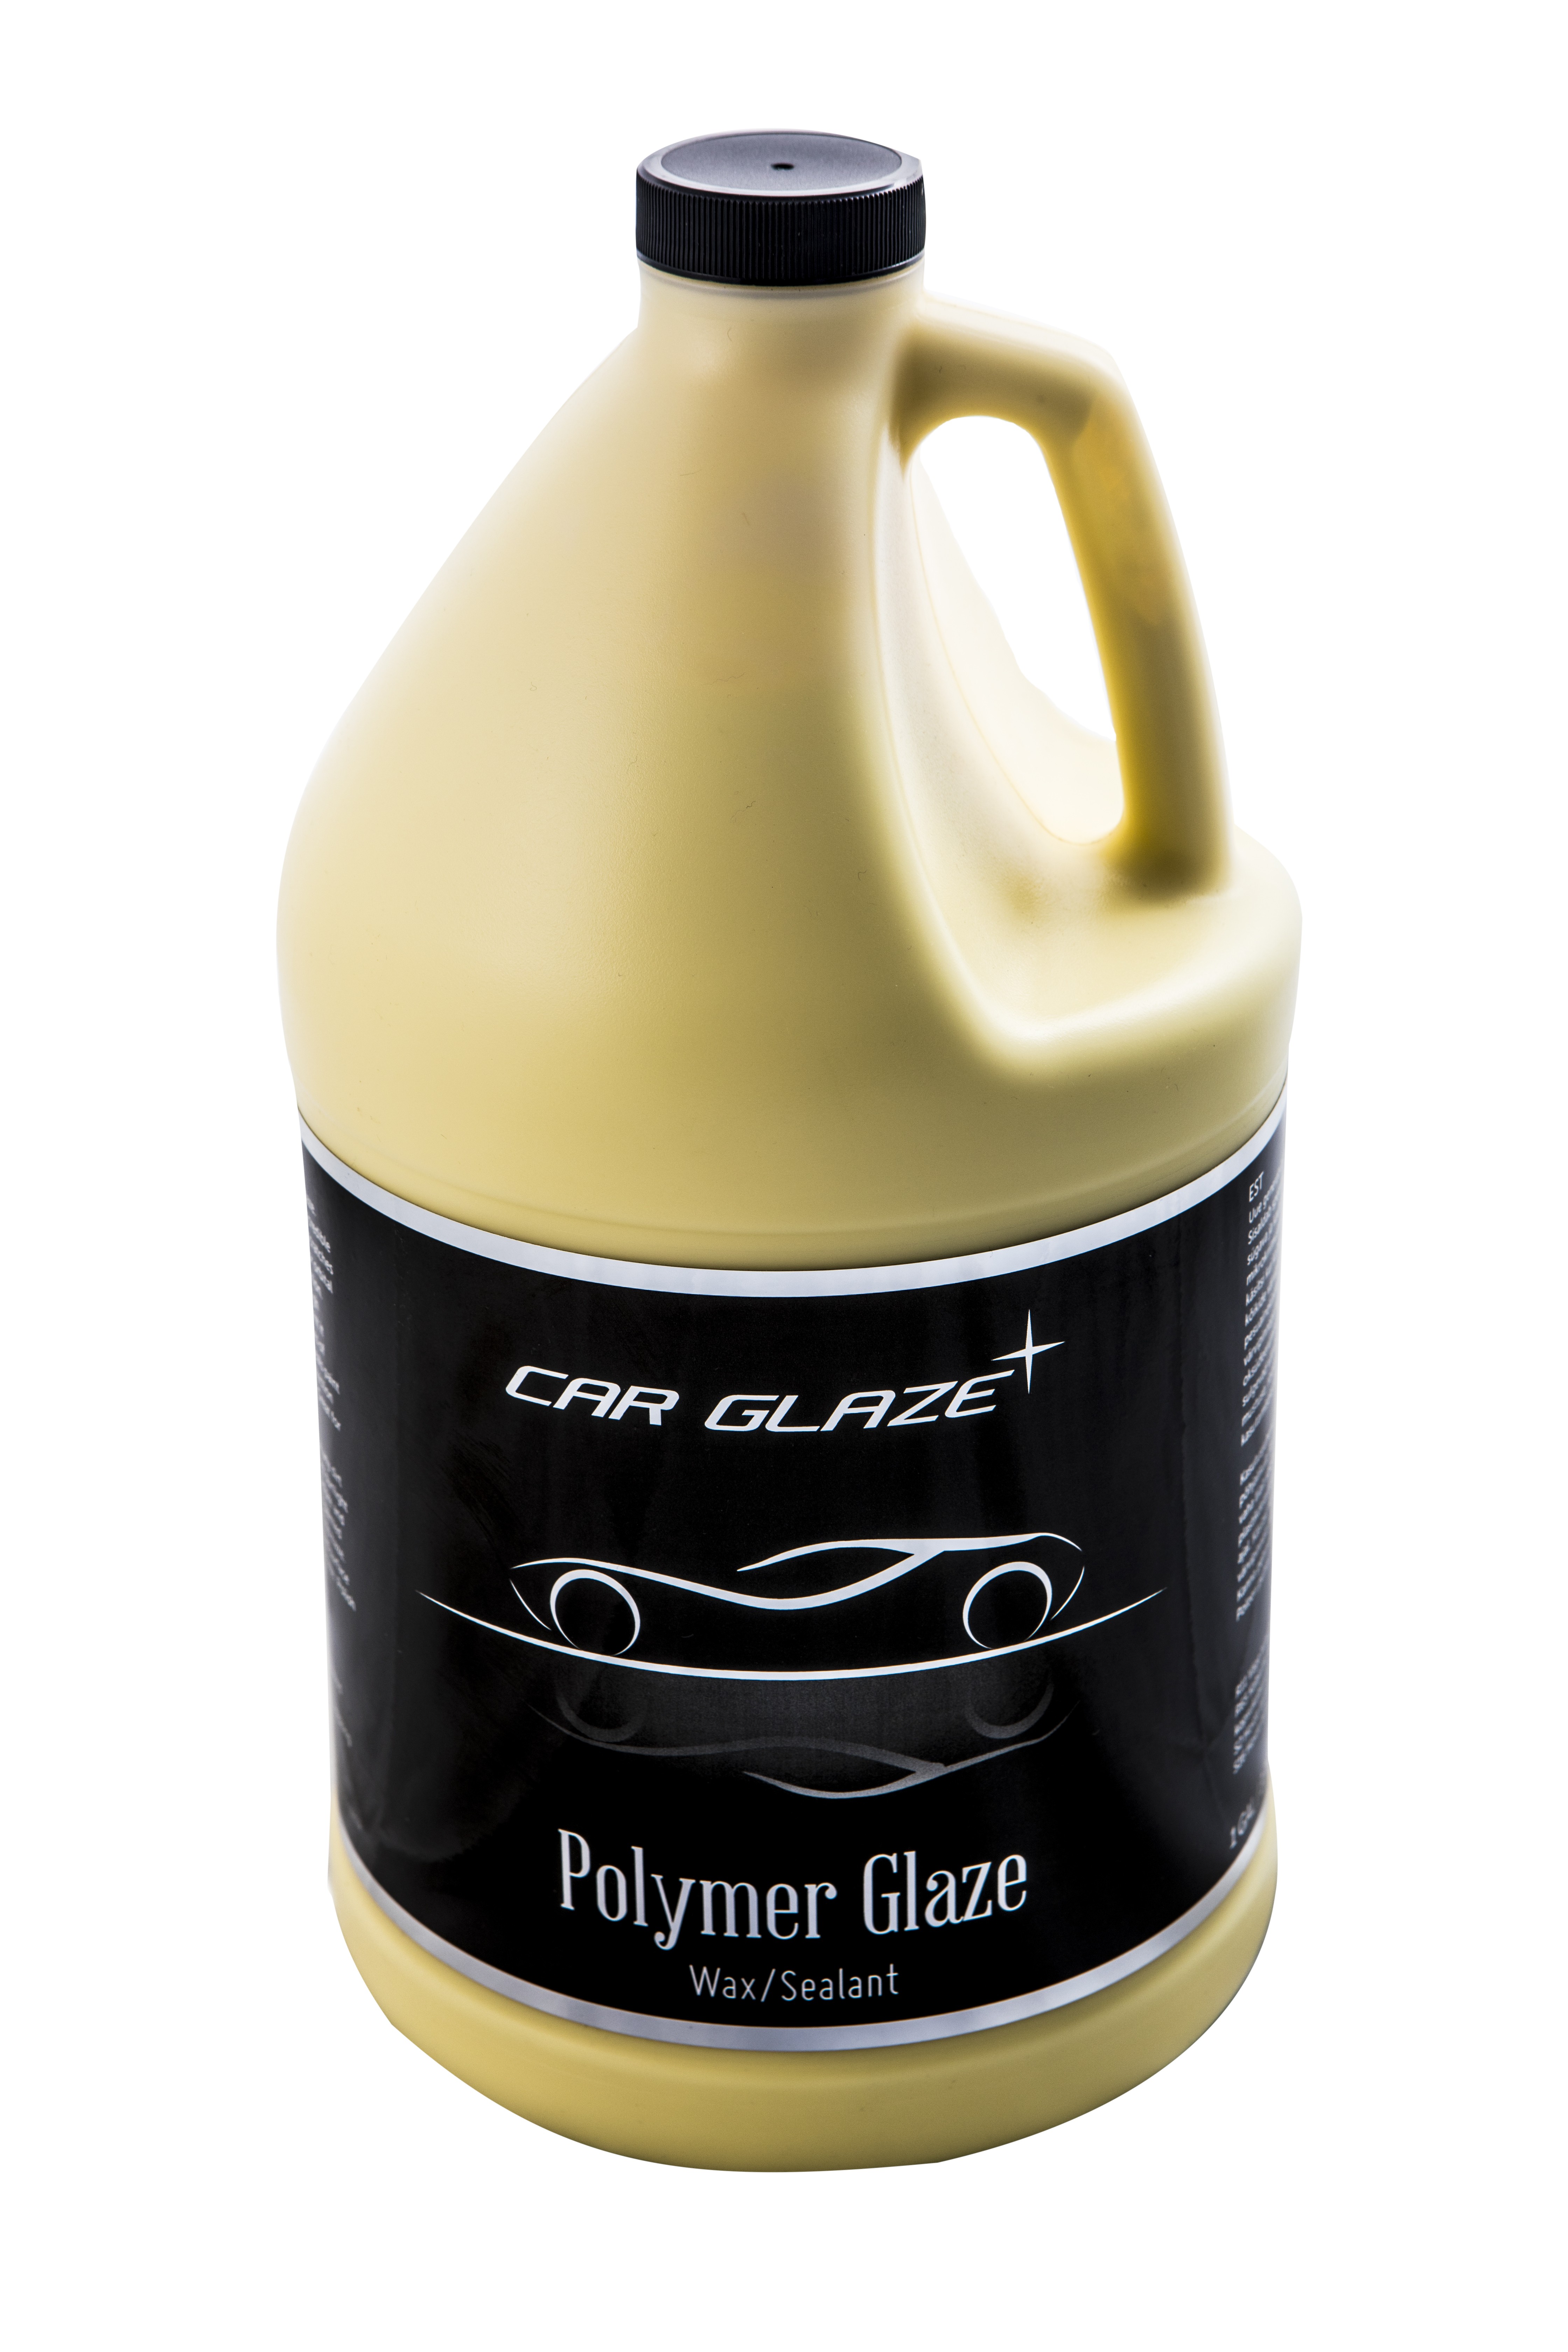 POLYMER GLAZE - Car Glaze - кремообразный стойкий воск - автовоск - полимерная защита поверхностей - защитный воск